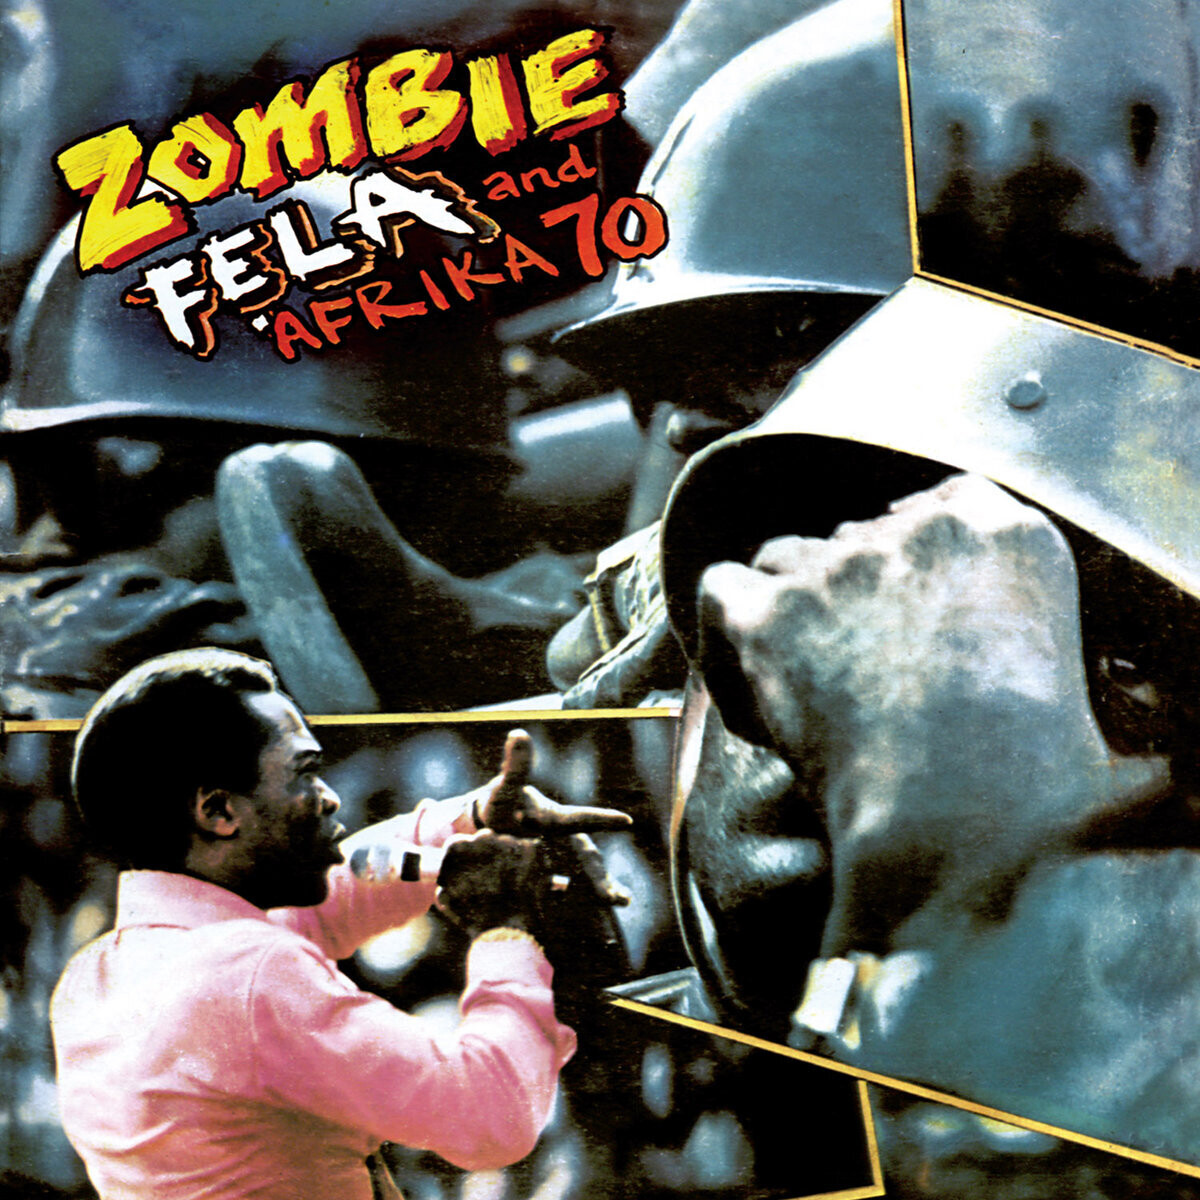 Fela Kuti & Afrika 70 "Zombie"